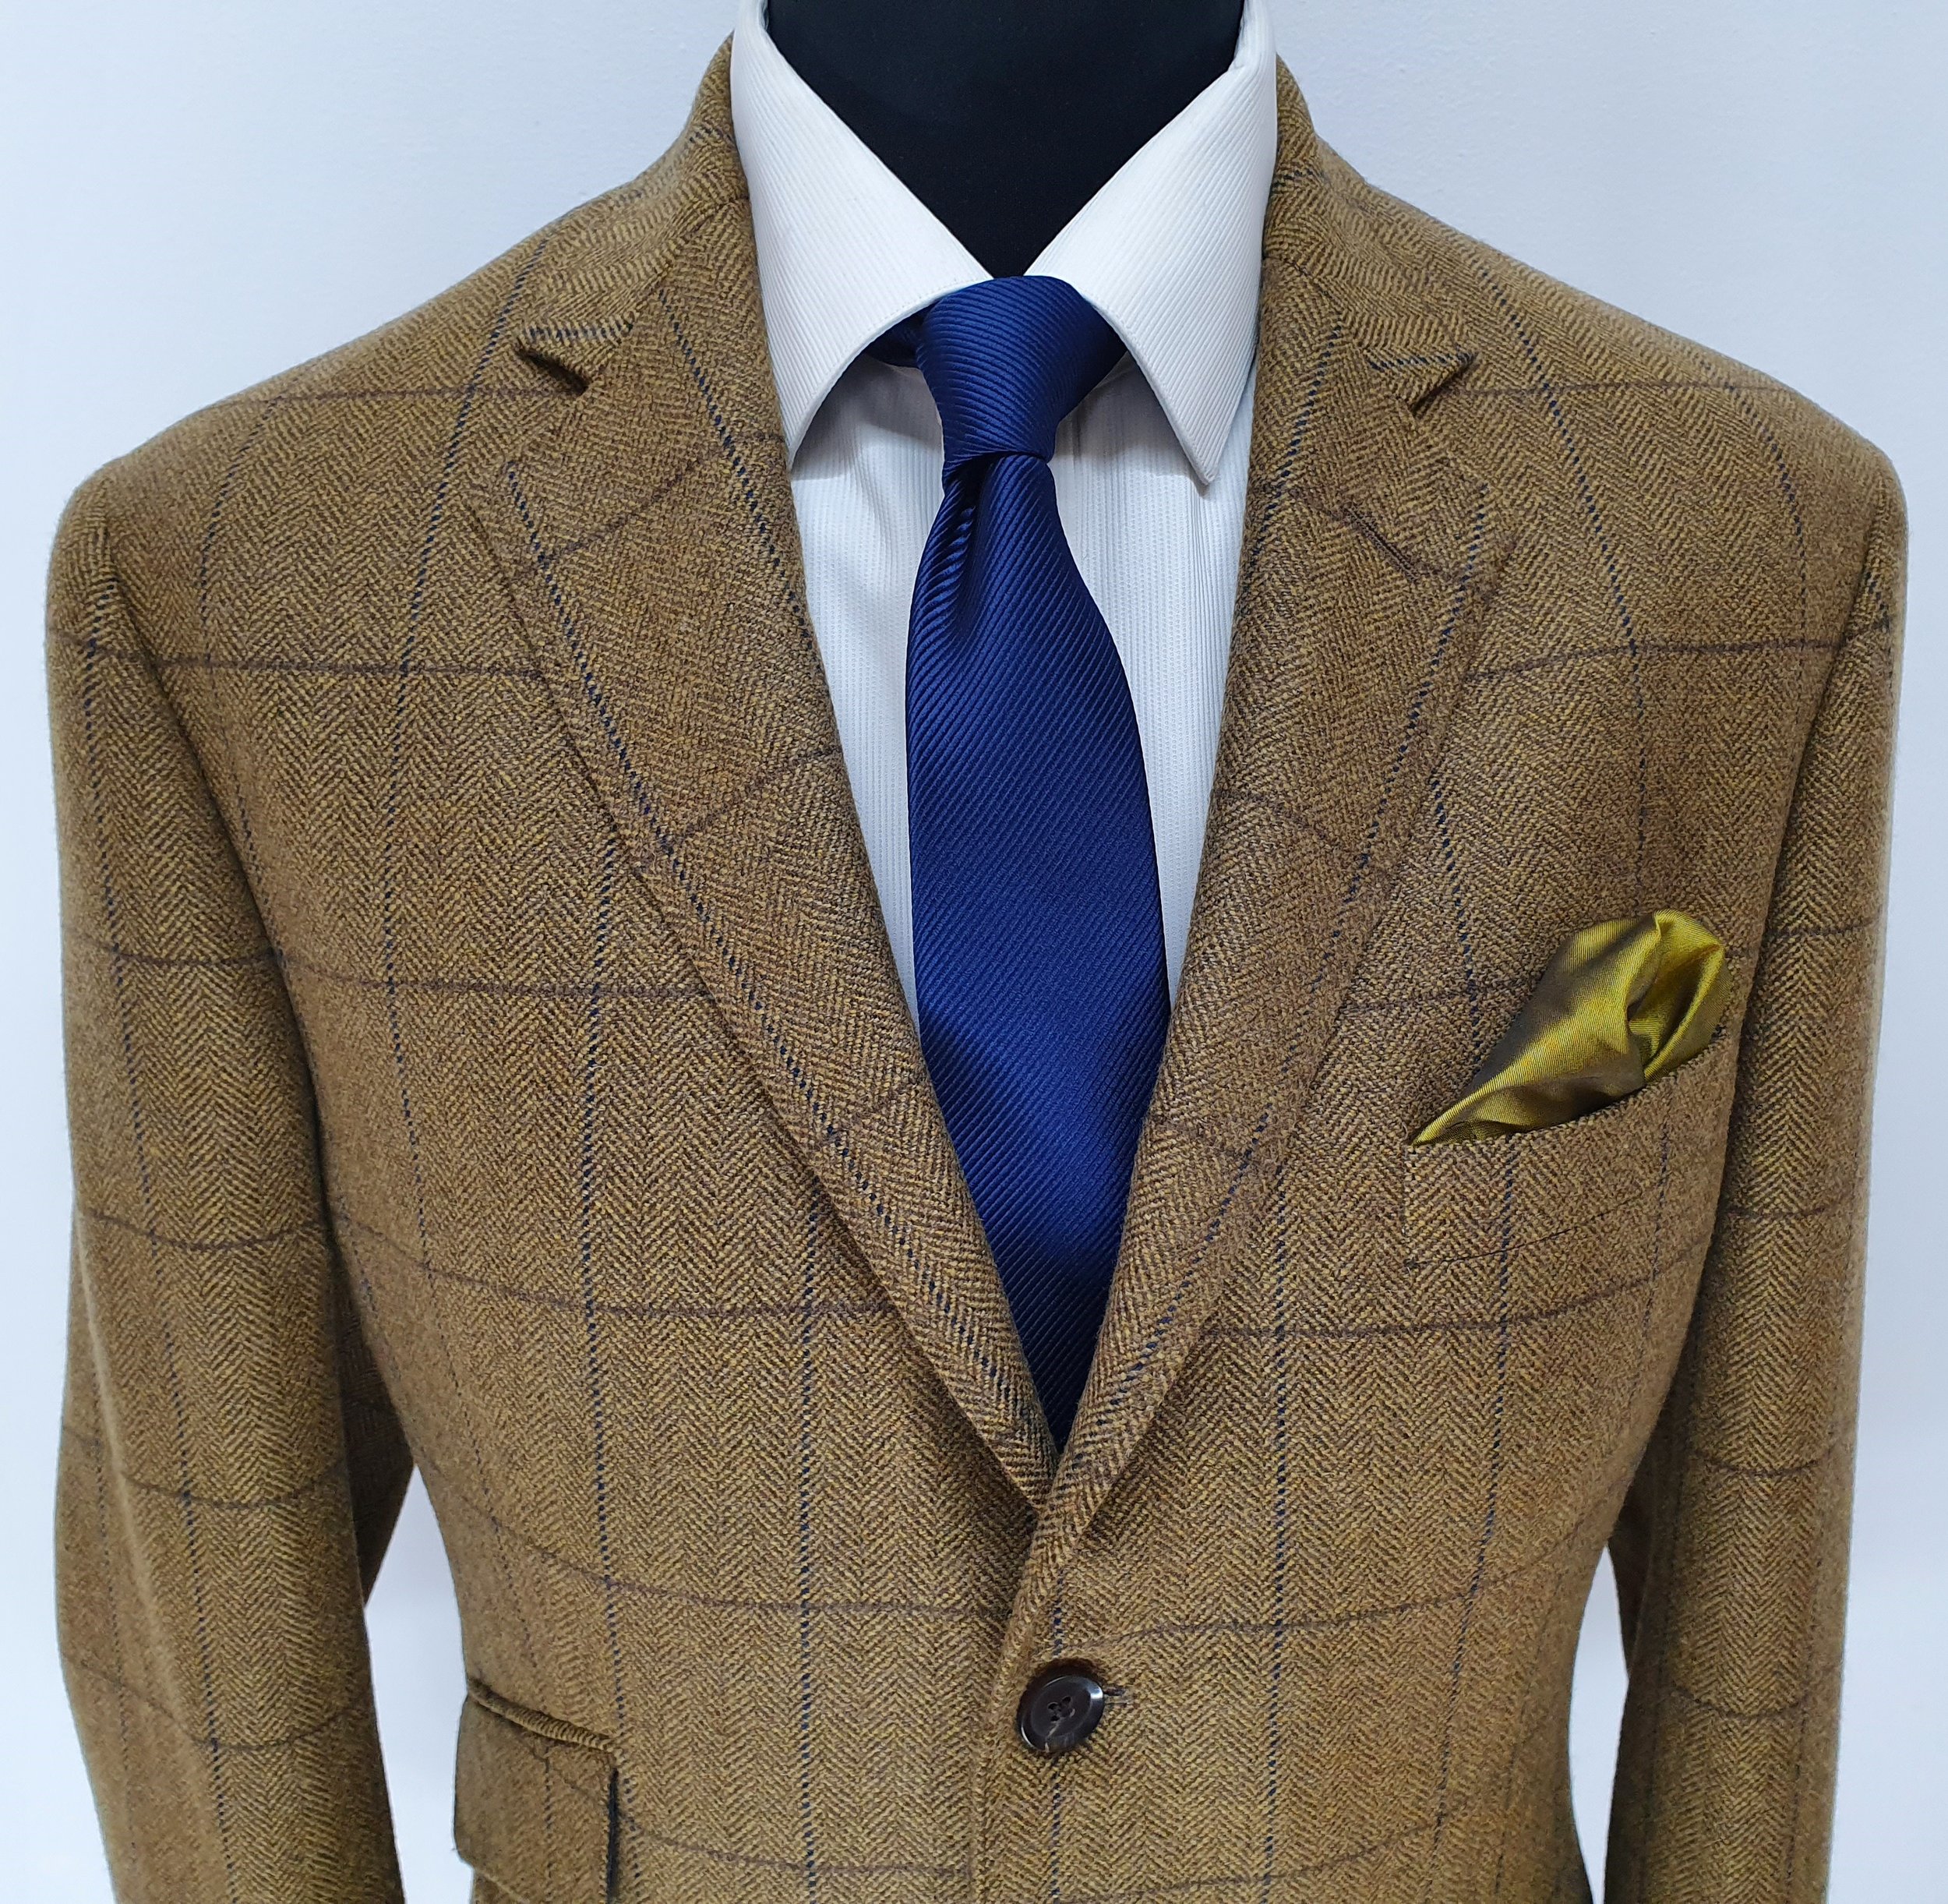 2 Piece suit in porter and harding Glenroyal tweed (3).jpg